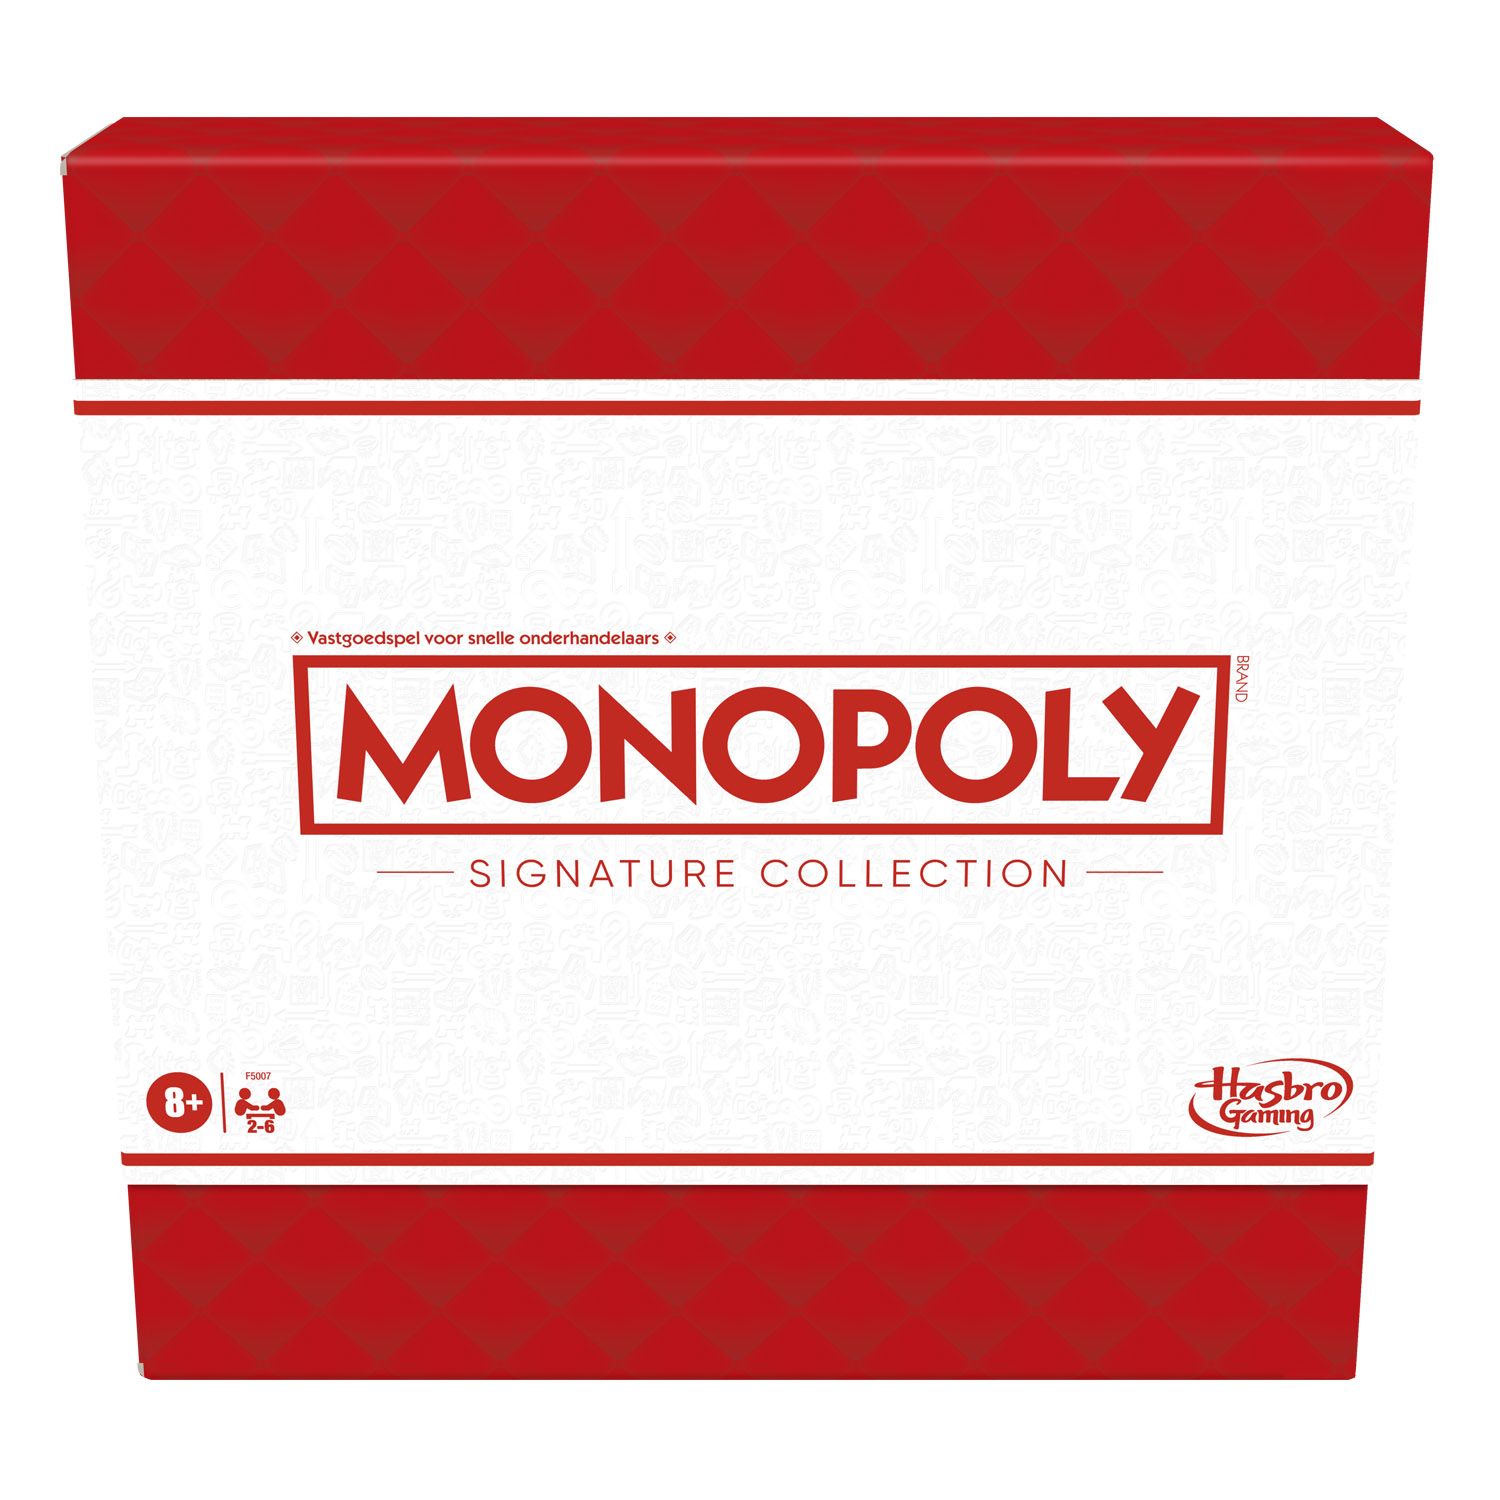 Hasbro Monopoly Signature Collectie (920)